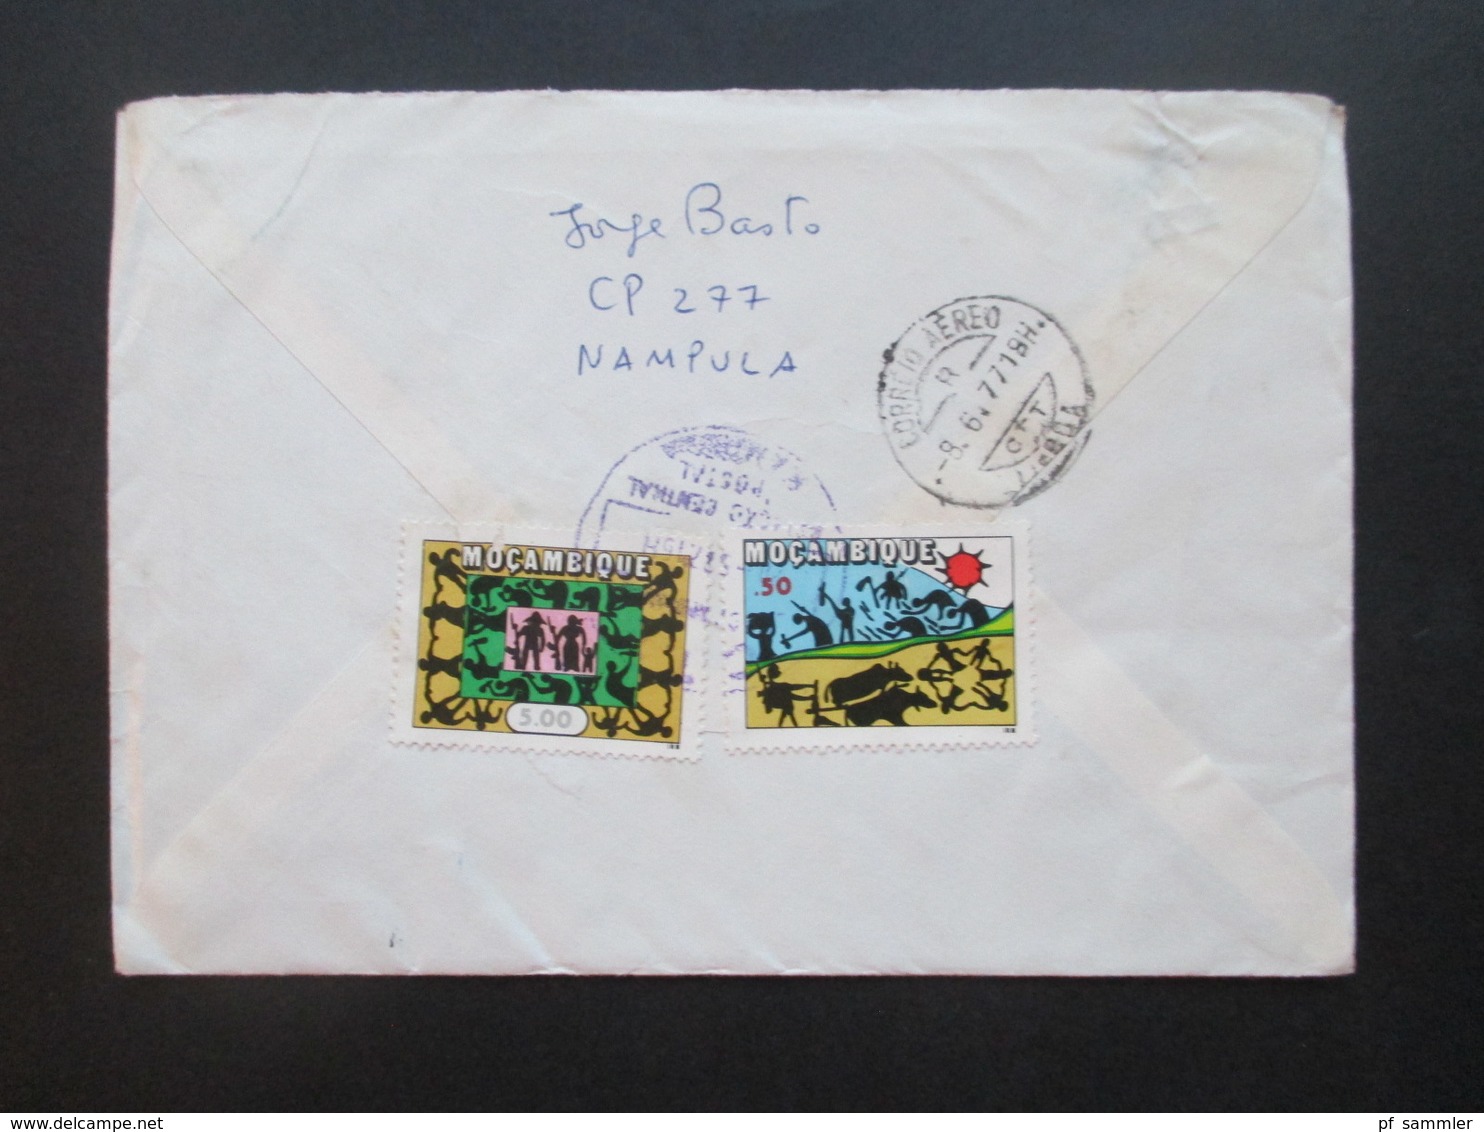 Mosambik / Mocambique 1977 Einschreiben Nampula In Die DDR Luftpost / Air Mail über Lisboa Portugal - Mosambik